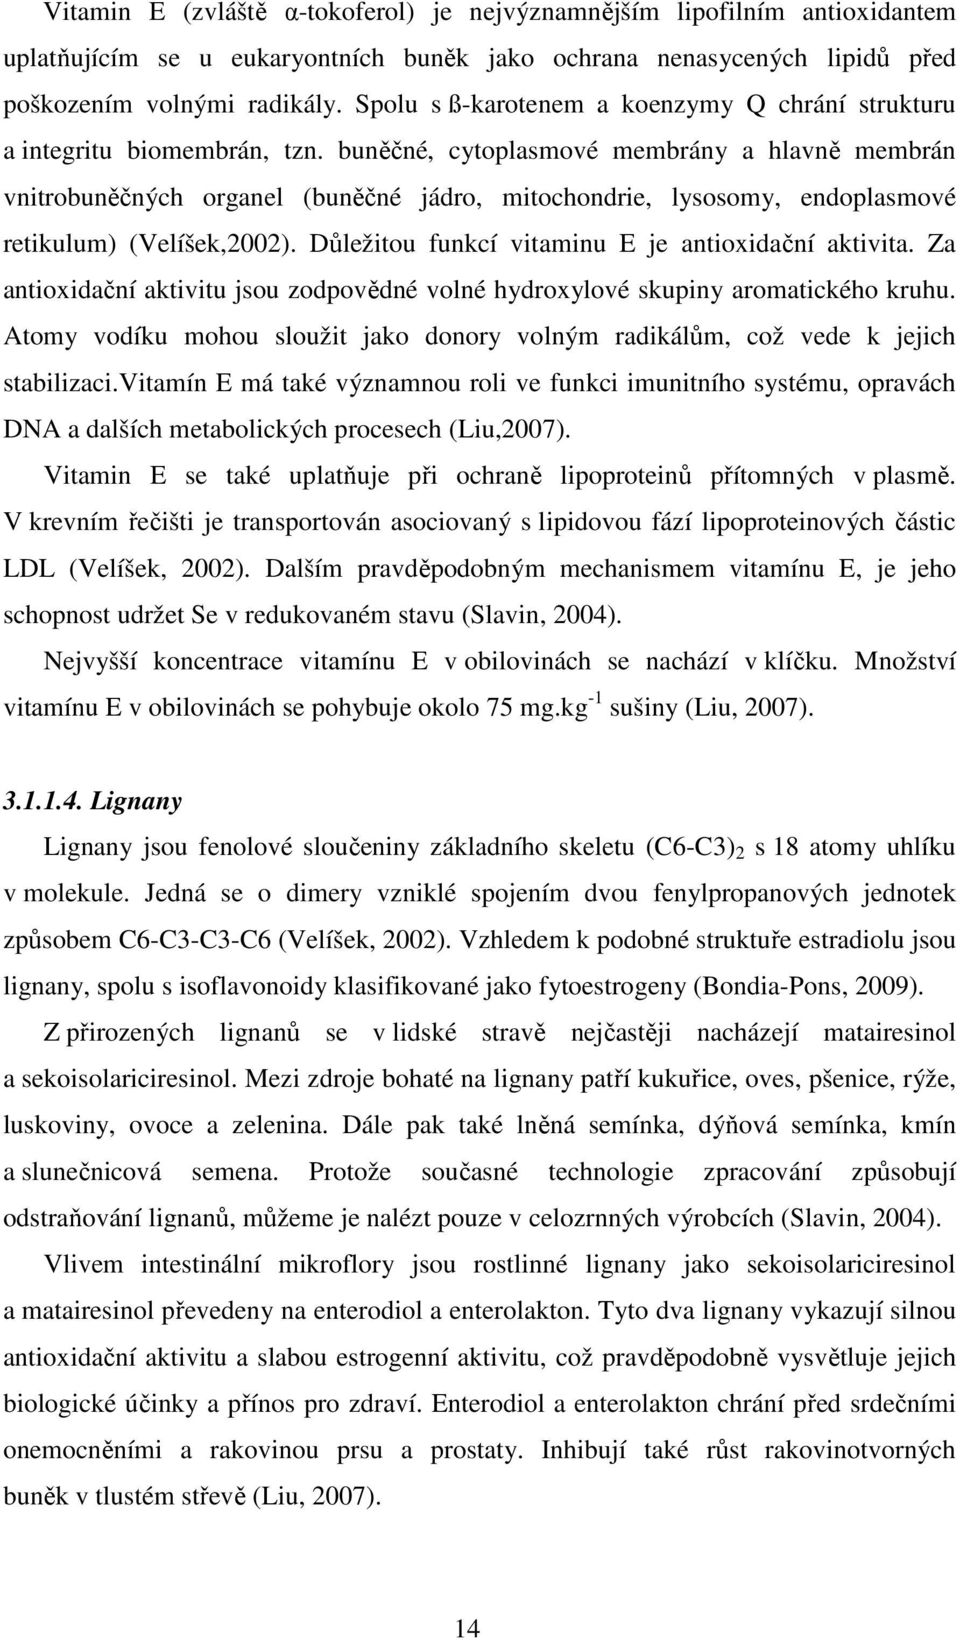 buněčné, cytoplasmové membrány a hlavně membrán vnitrobuněčných organel (buněčné jádro, mitochondrie, lysosomy, endoplasmové retikulum) (Velíšek,2002).